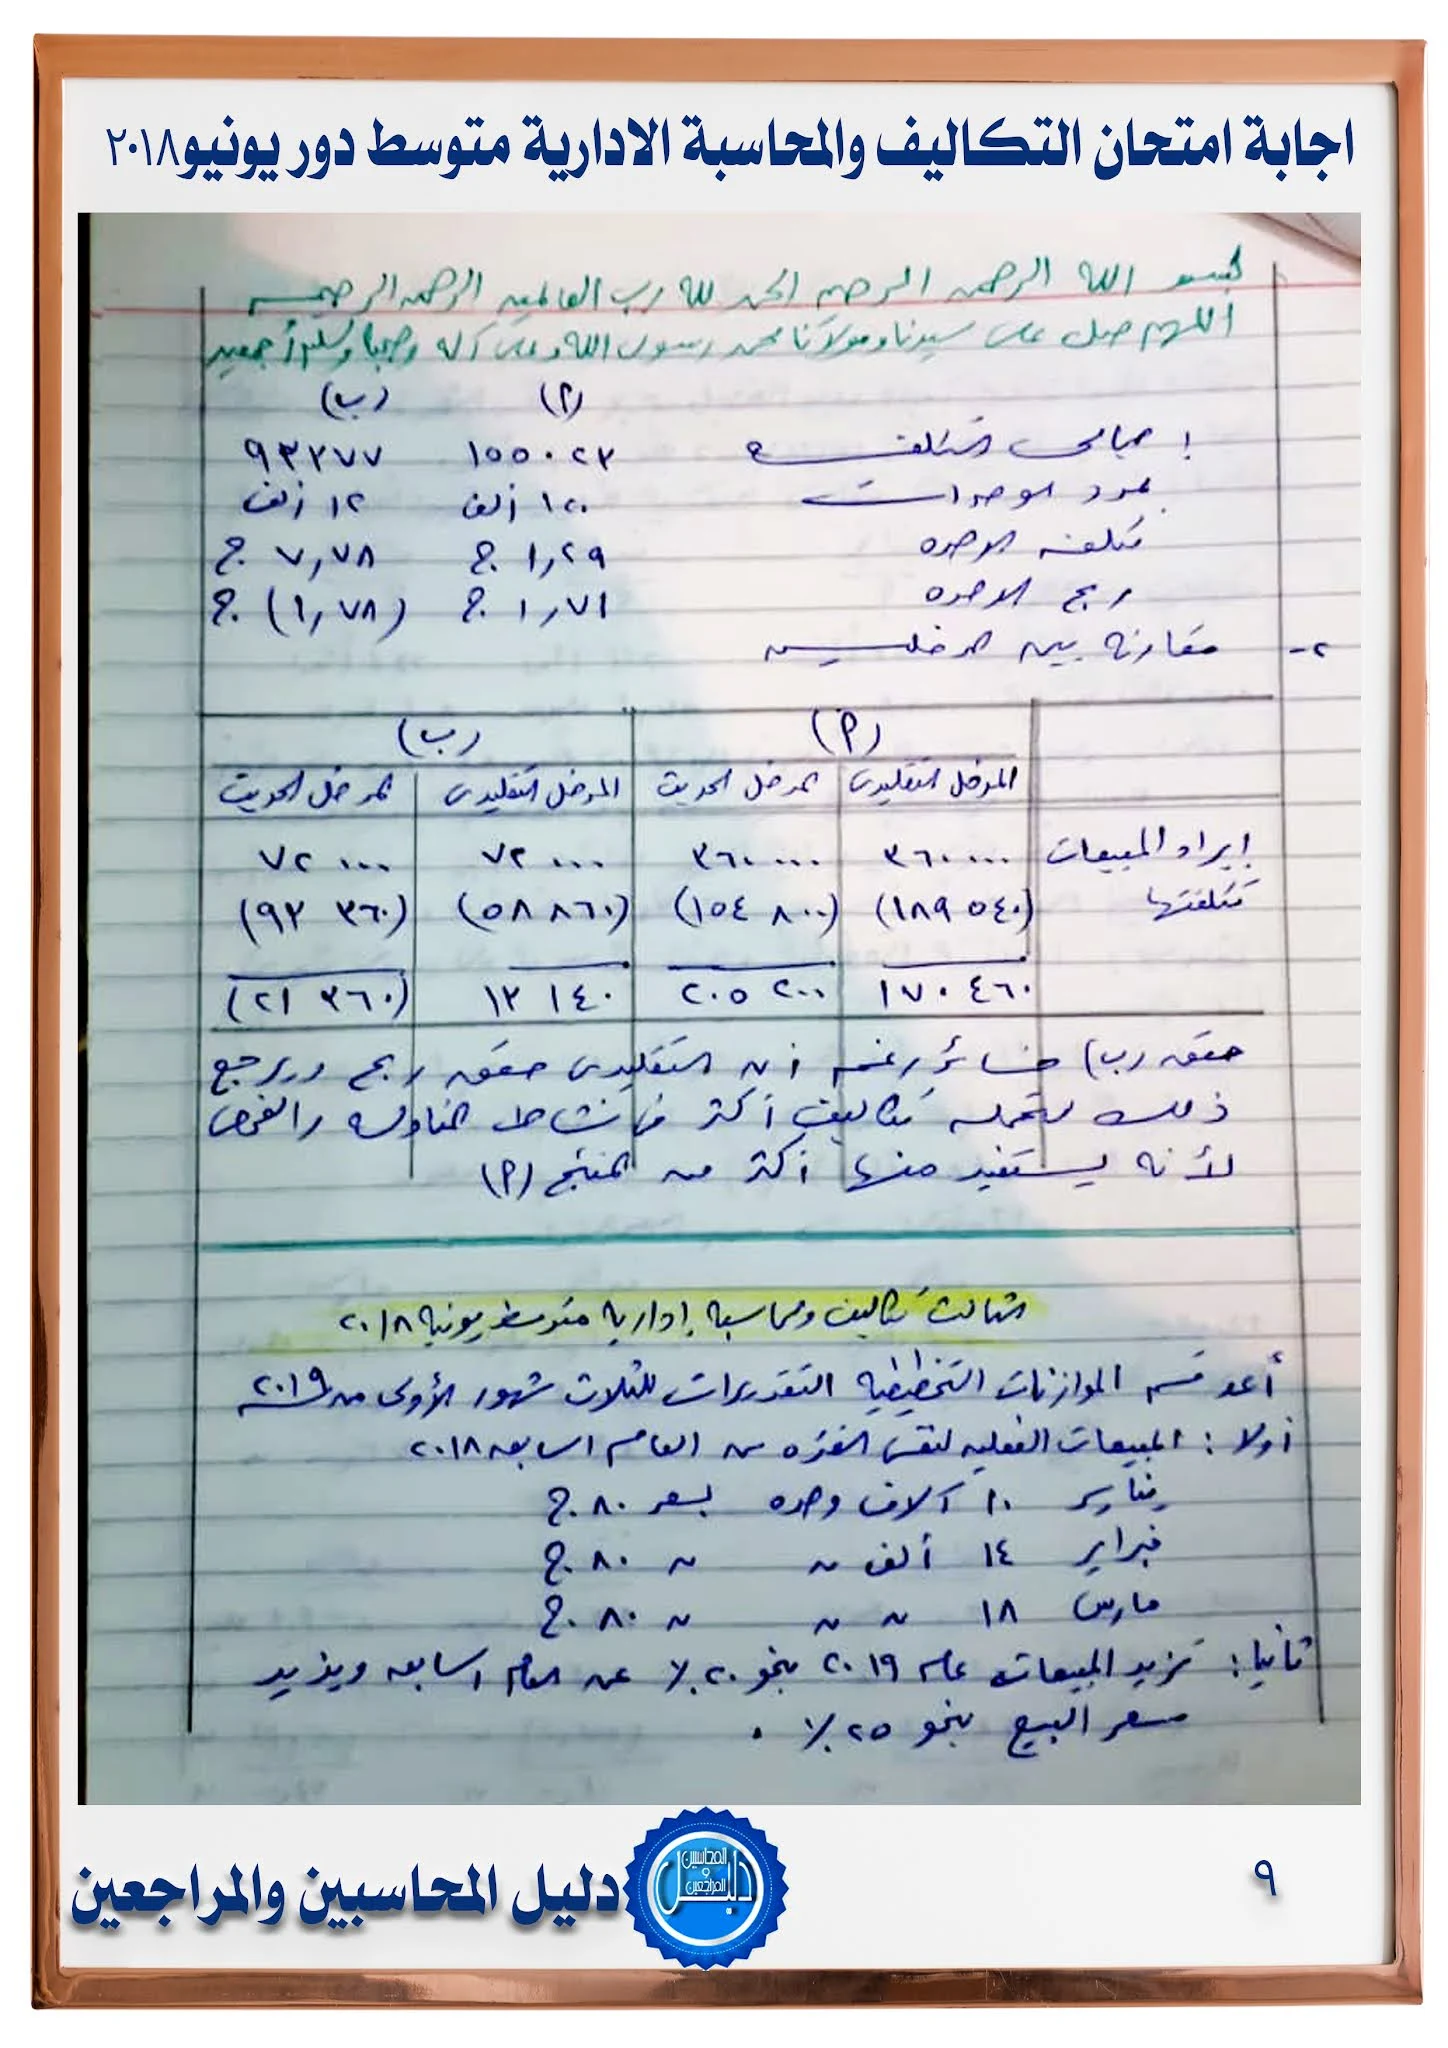 اجابة امتحان التكاليف والمحاسبة الادارية للمستوي المتوسط  يونيو 2018 جمعية المحاسبين والمراجعين المصرية